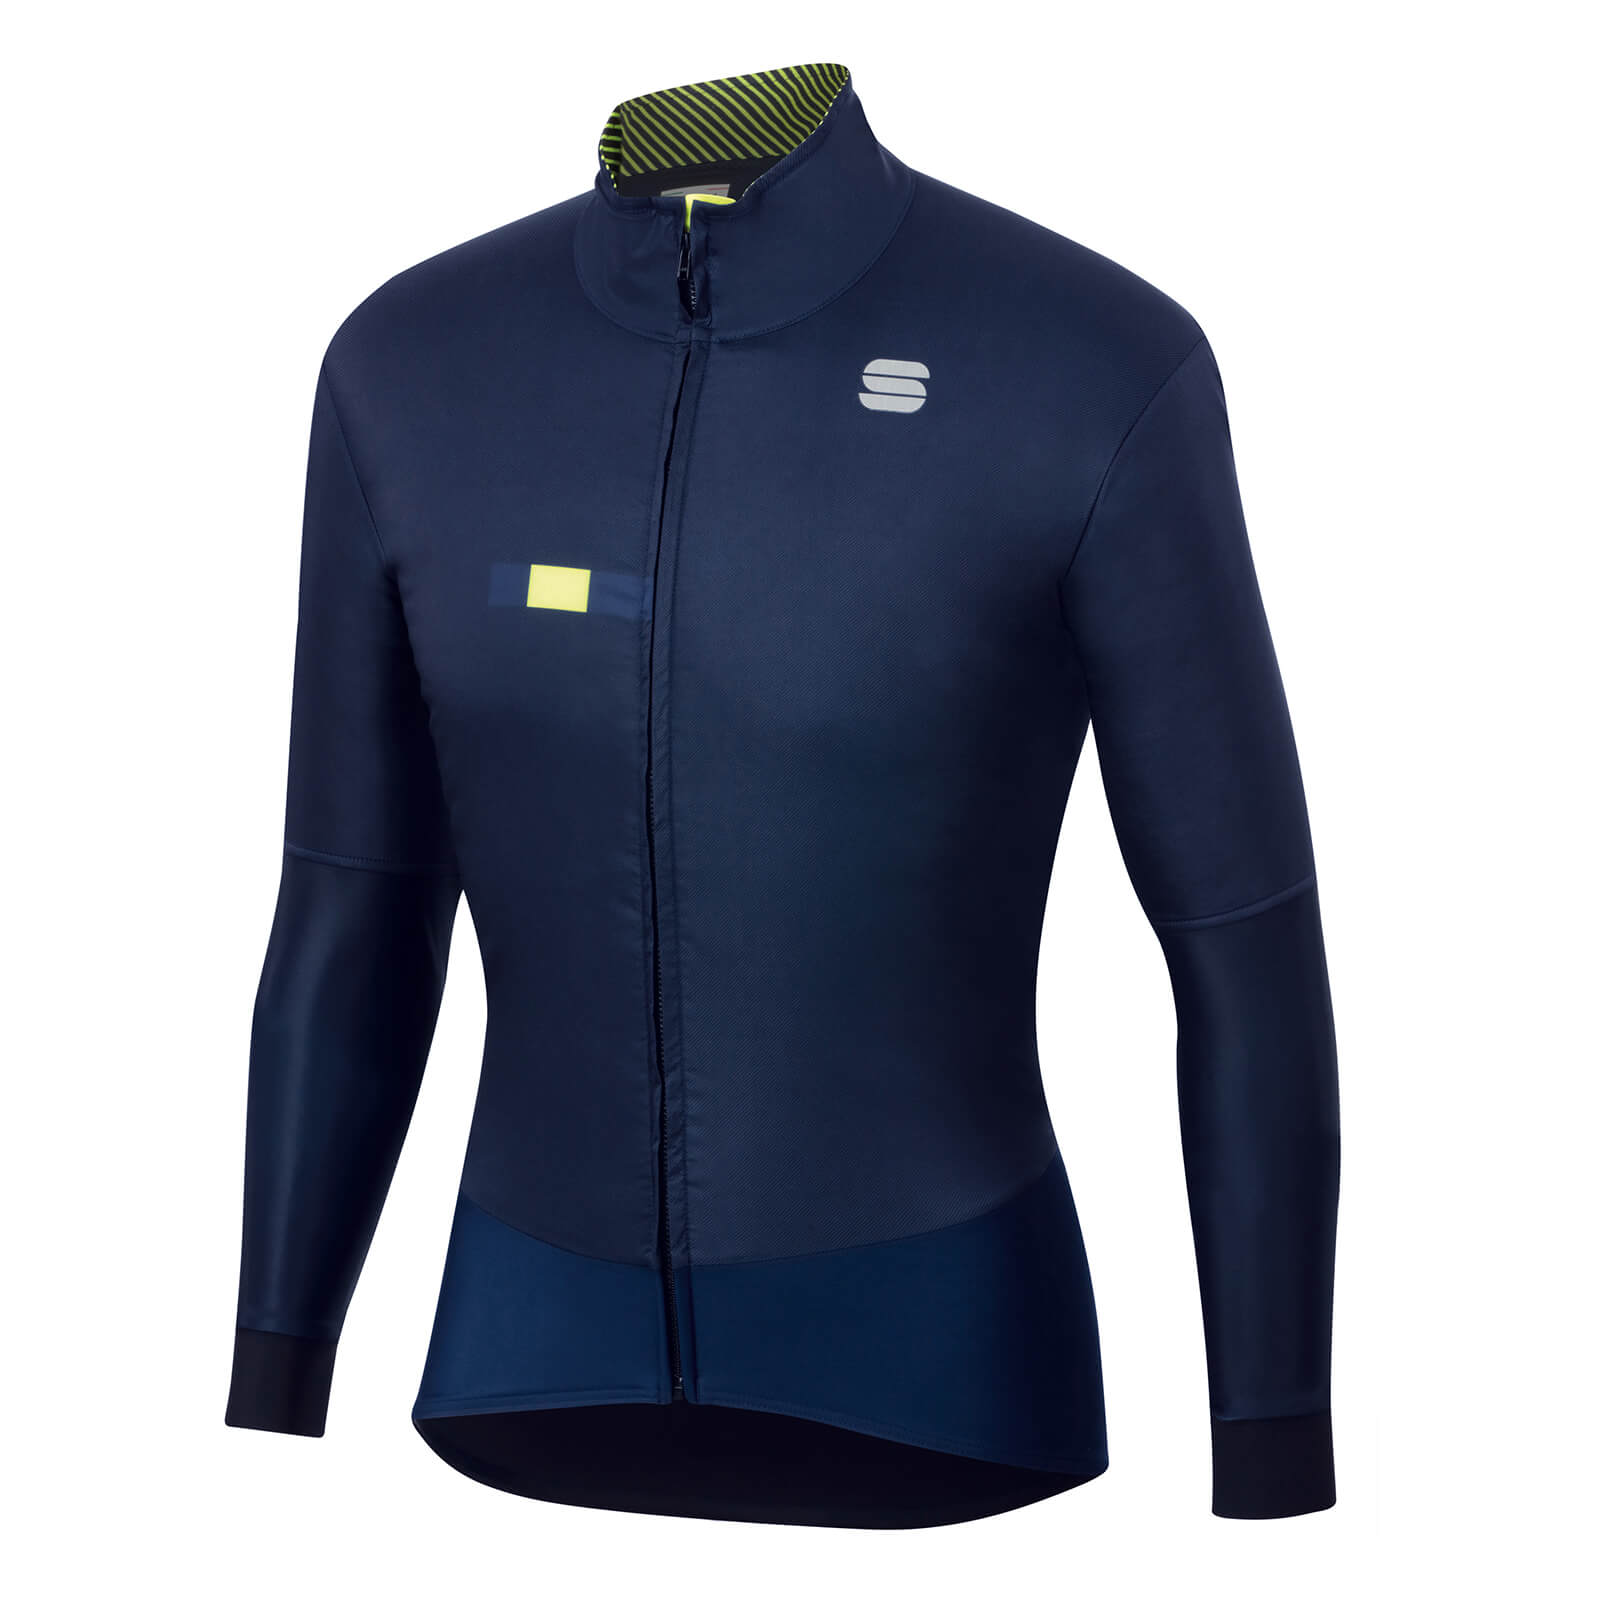 Sportful Bodyfit Pro Jacket - XL - Blue/Yellow Fluo;